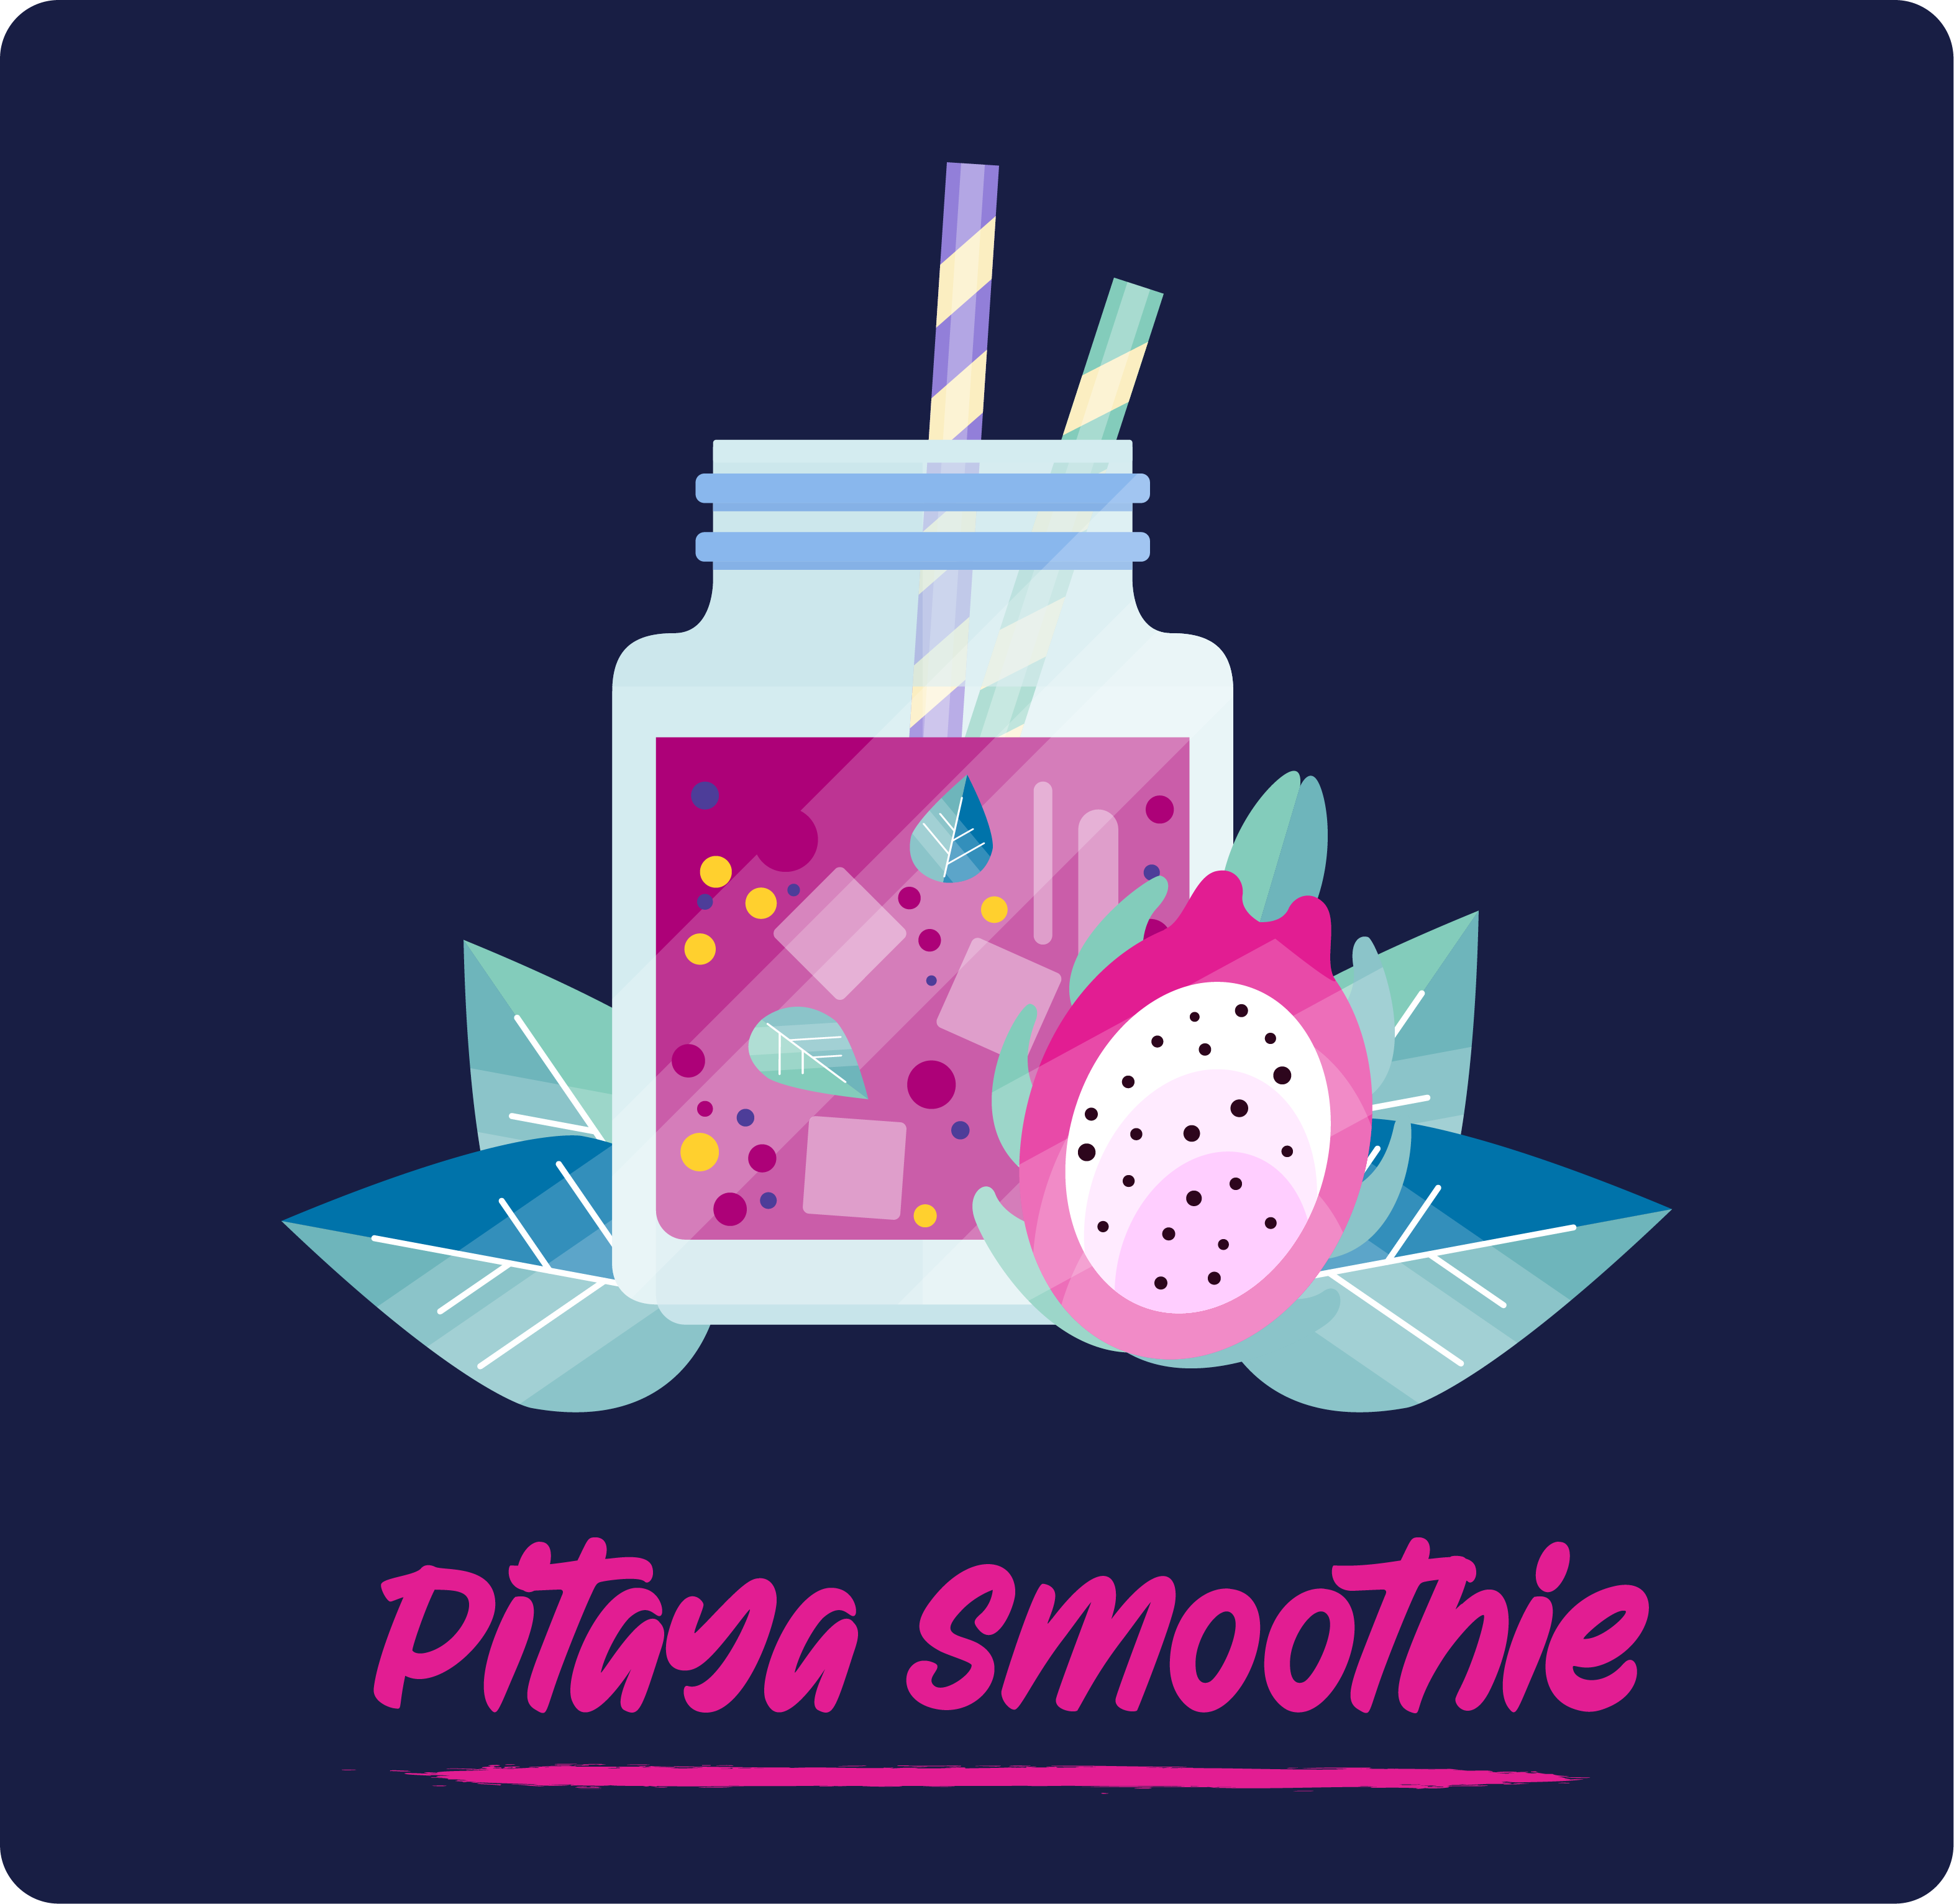 Pitaya smoothie